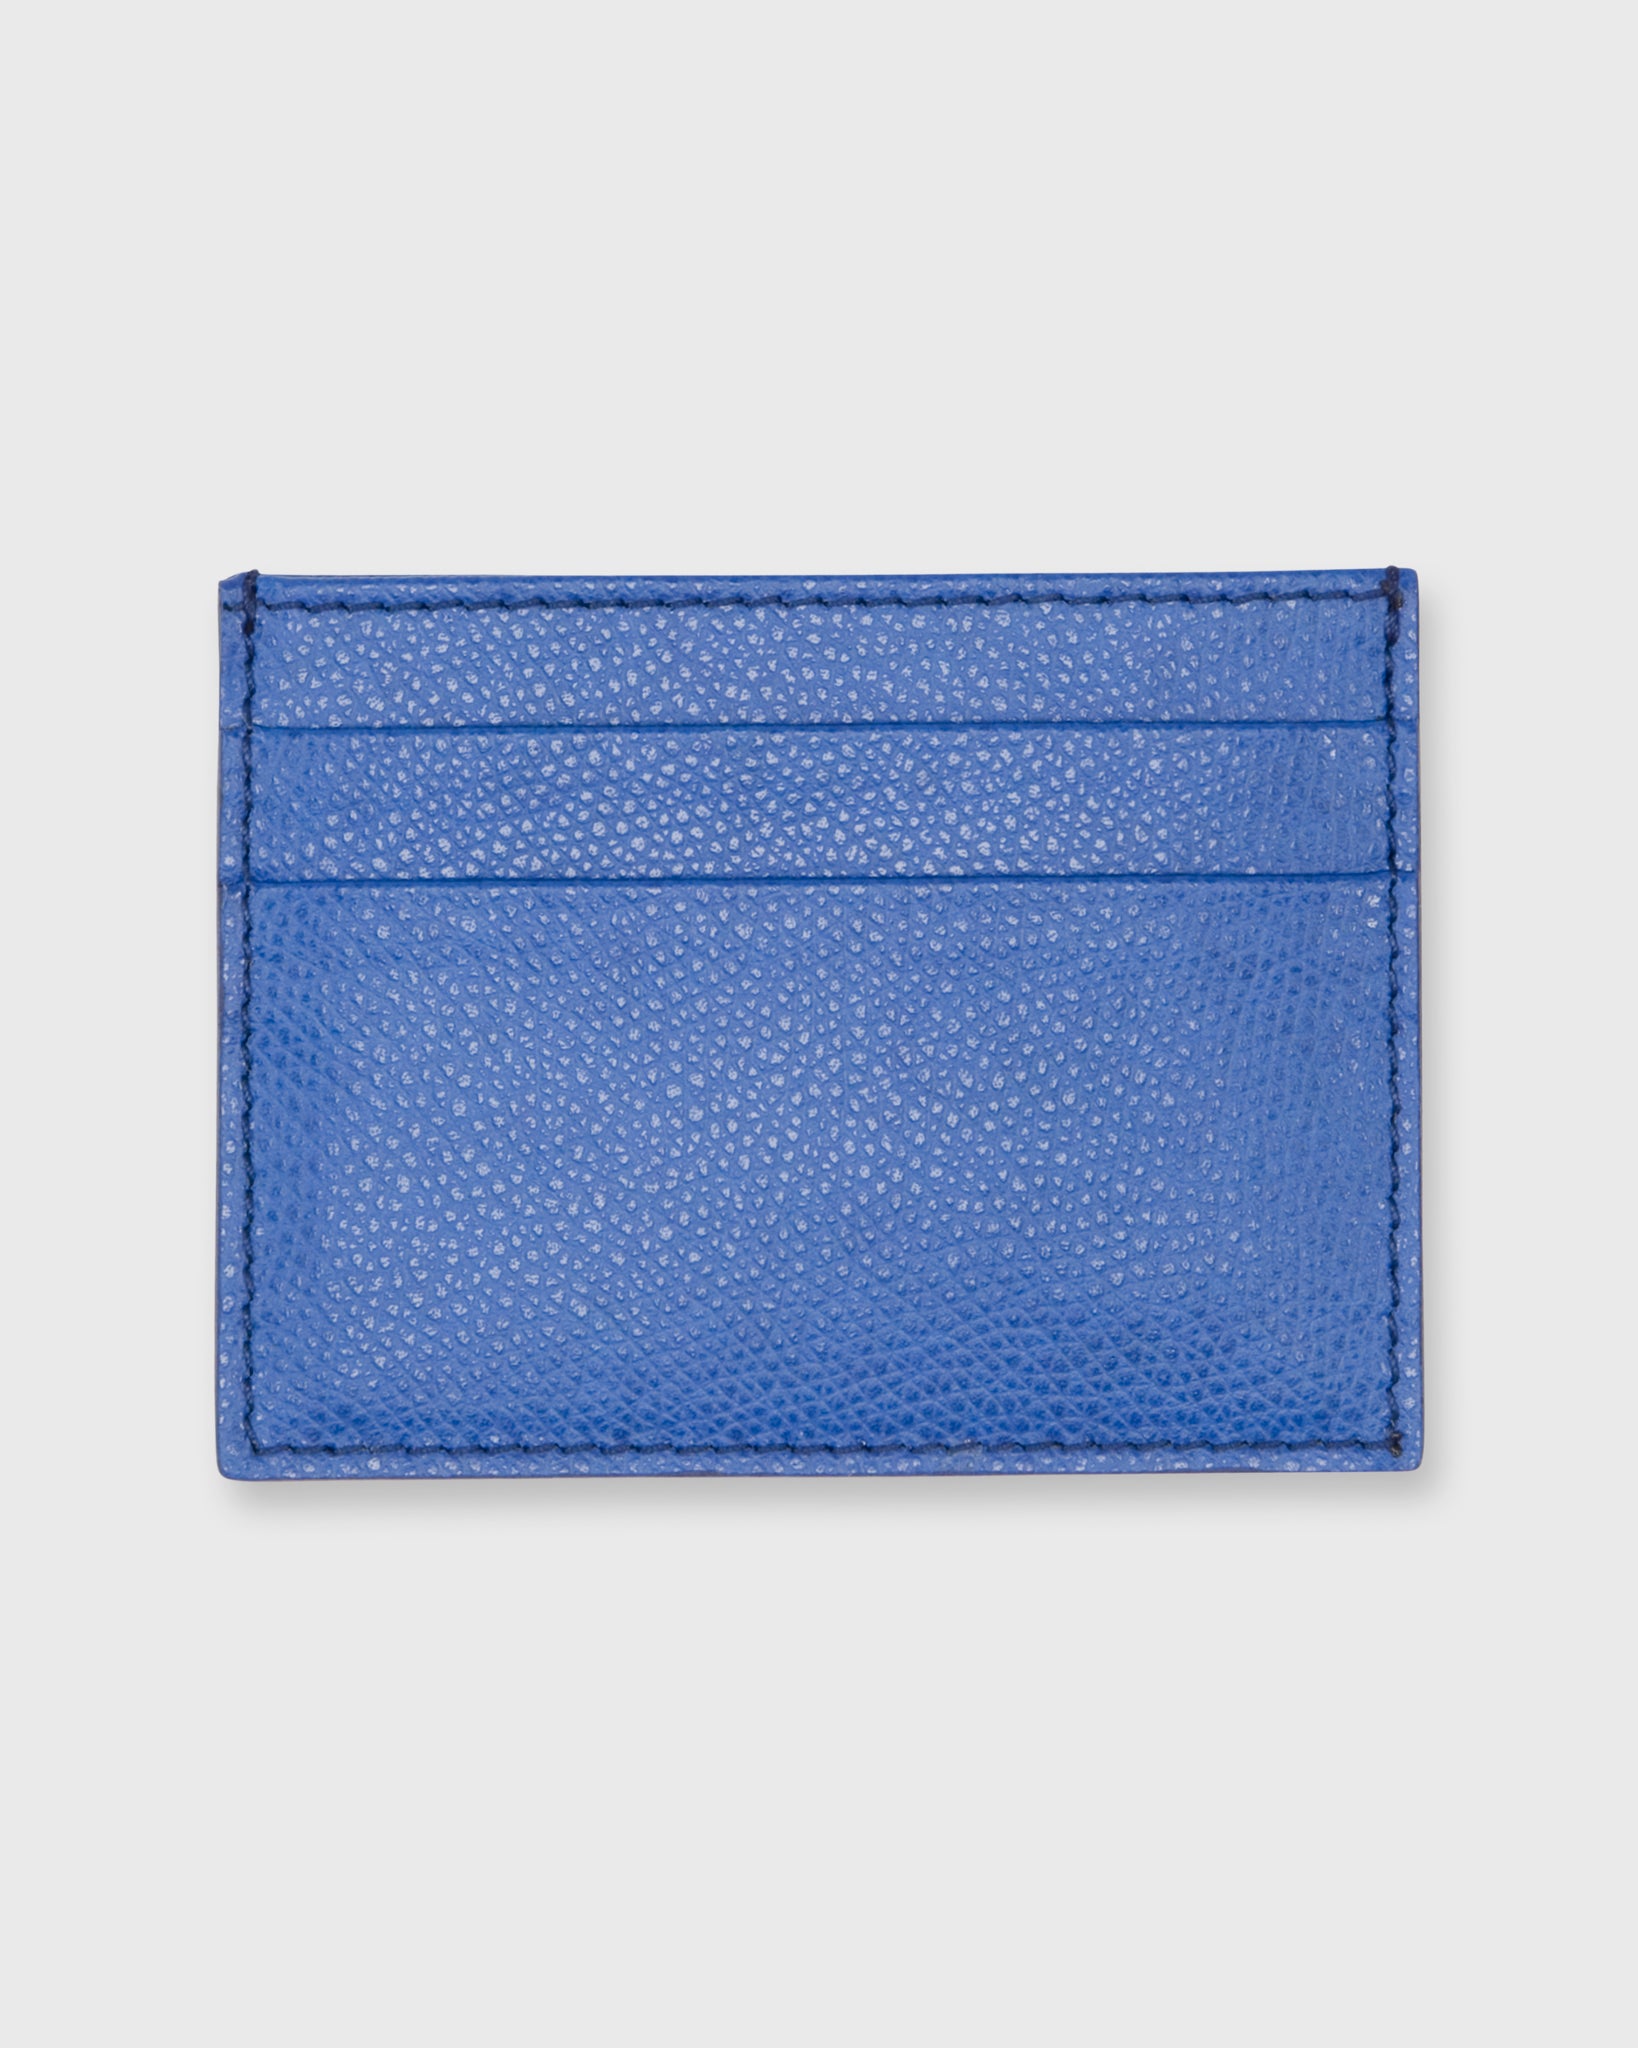 Card Holder in Cobalt Leather